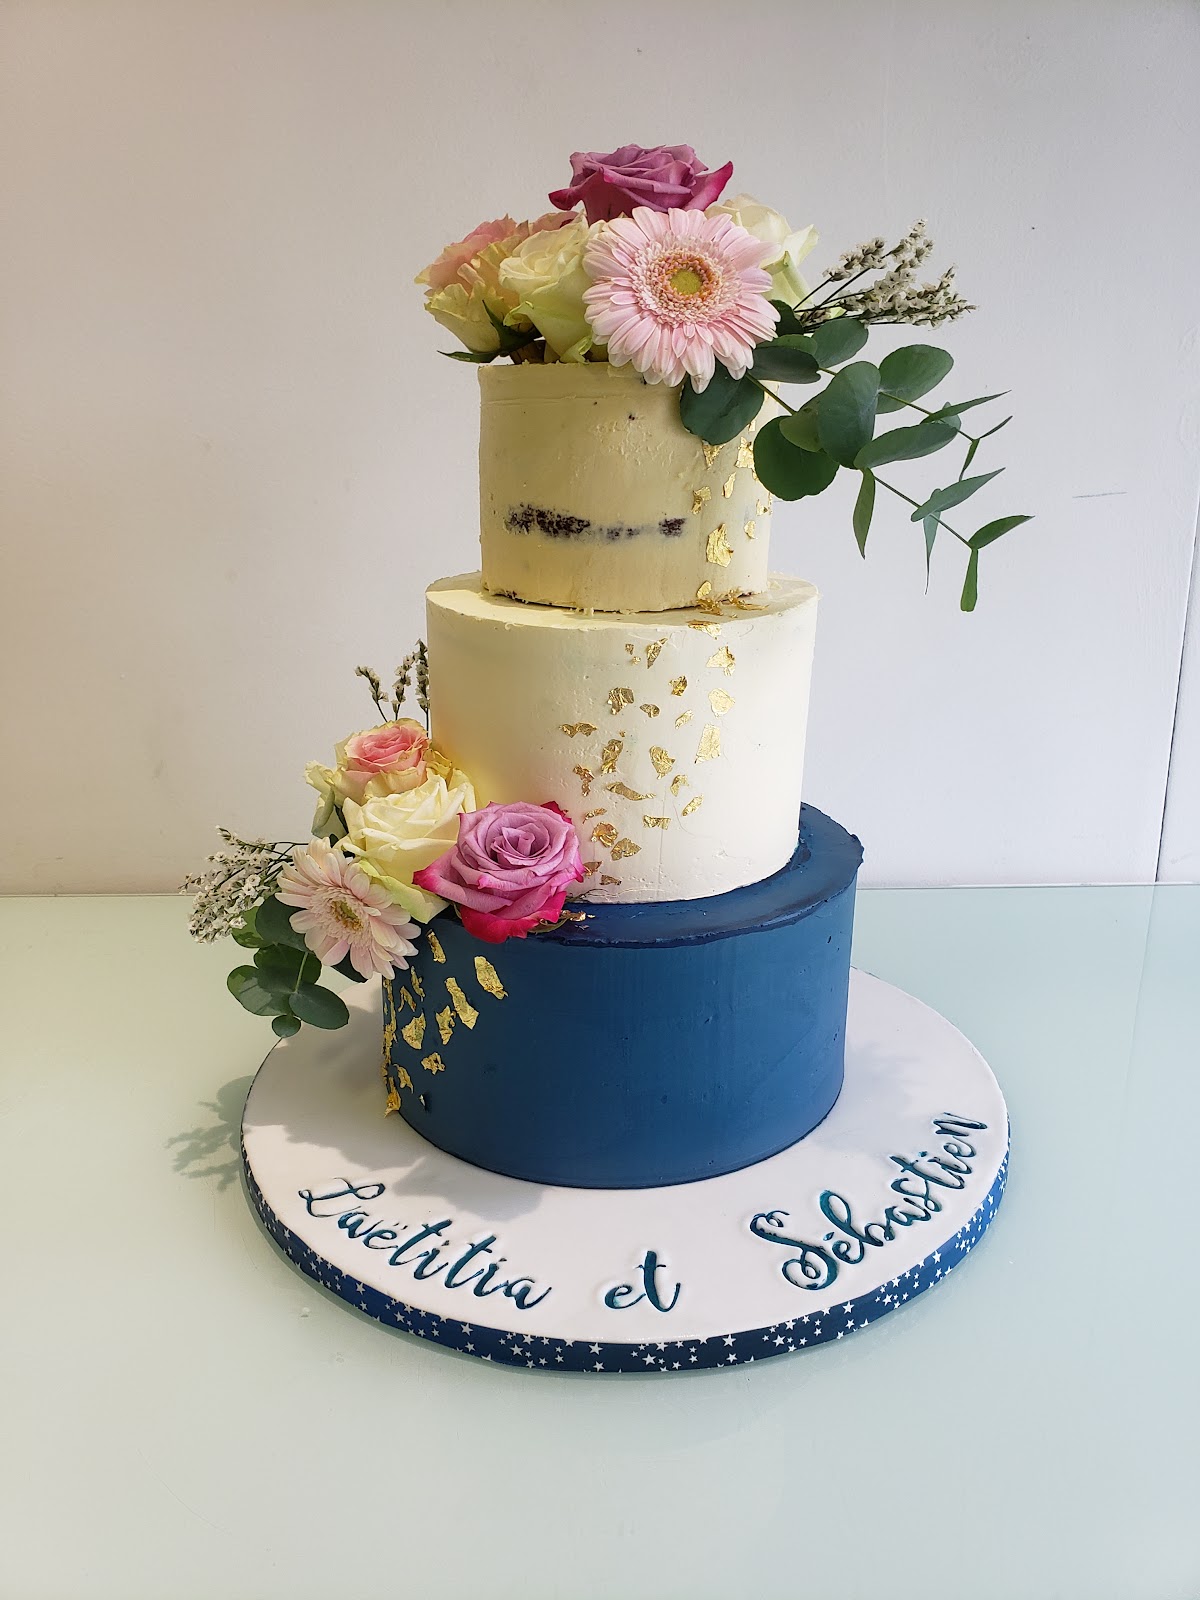 Just Lady Cake - cake designer professionnelle dans l'oise à Saint Crépin Ibouvillers (60149)